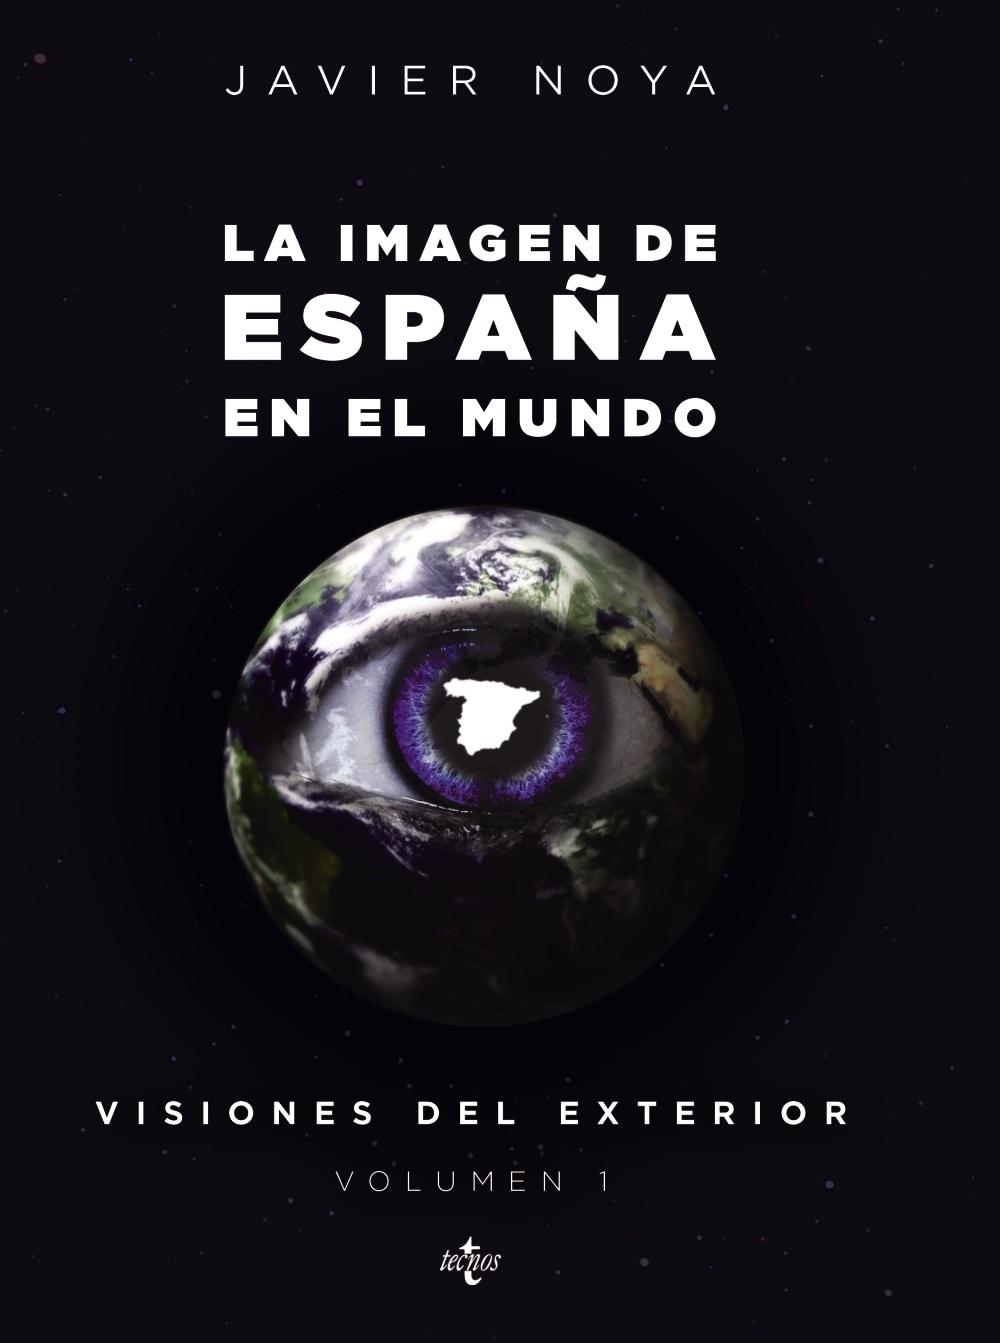 Visiones en el Exterior Vol.I "La Imagen de España en el Mundo"